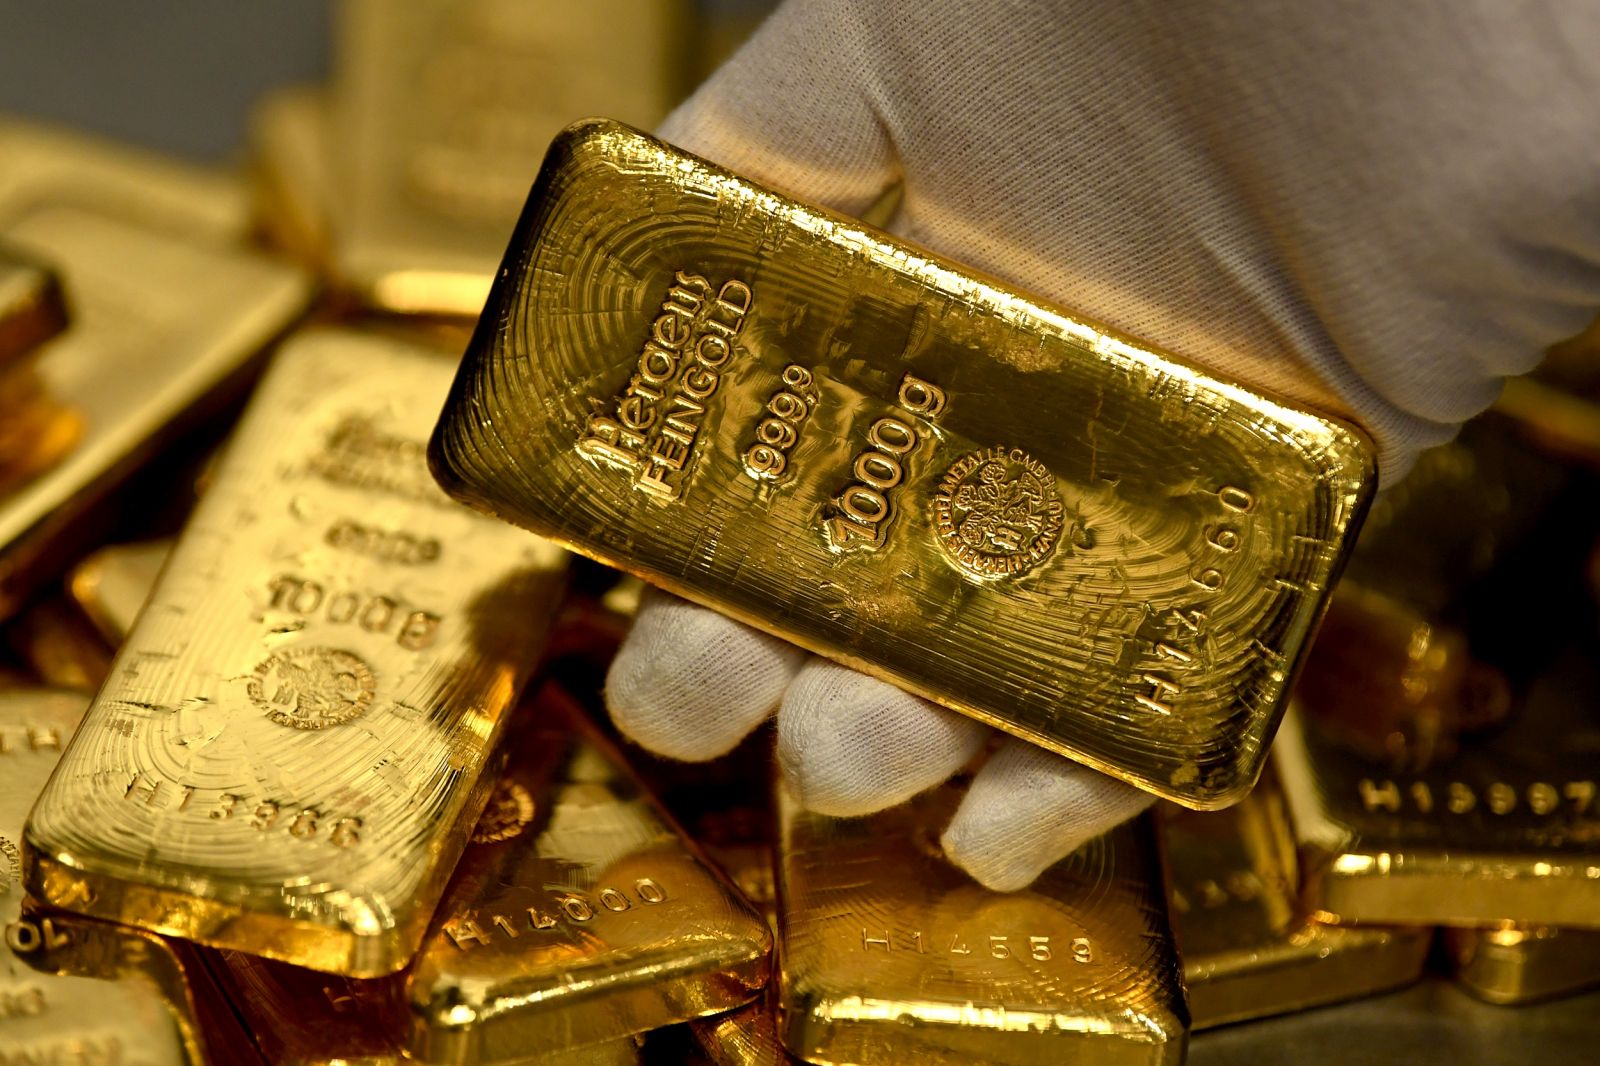 chuyên gia dự báo, giá vàng sẽ tiếp tục tăng cao và có khả năng phá vỡ mức giá kỷ lục trong tháng 4 này.